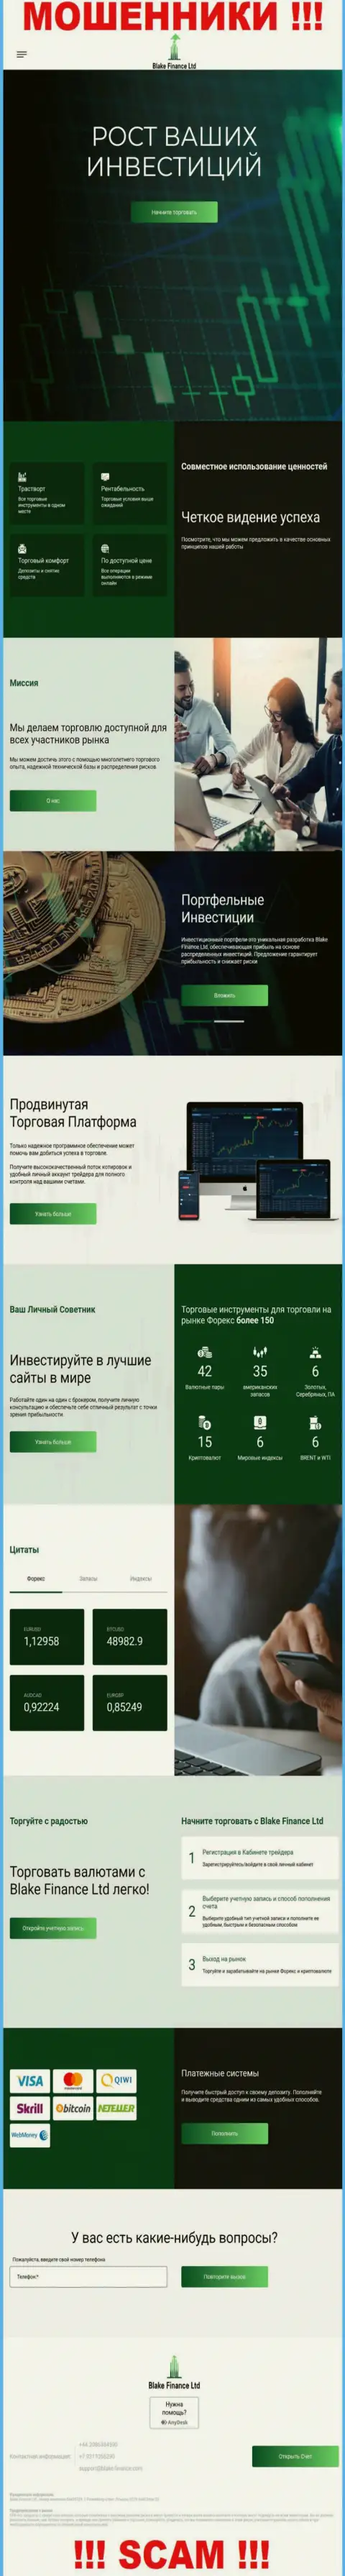 Web-сайт мошенников Блэк-Финанс Ком